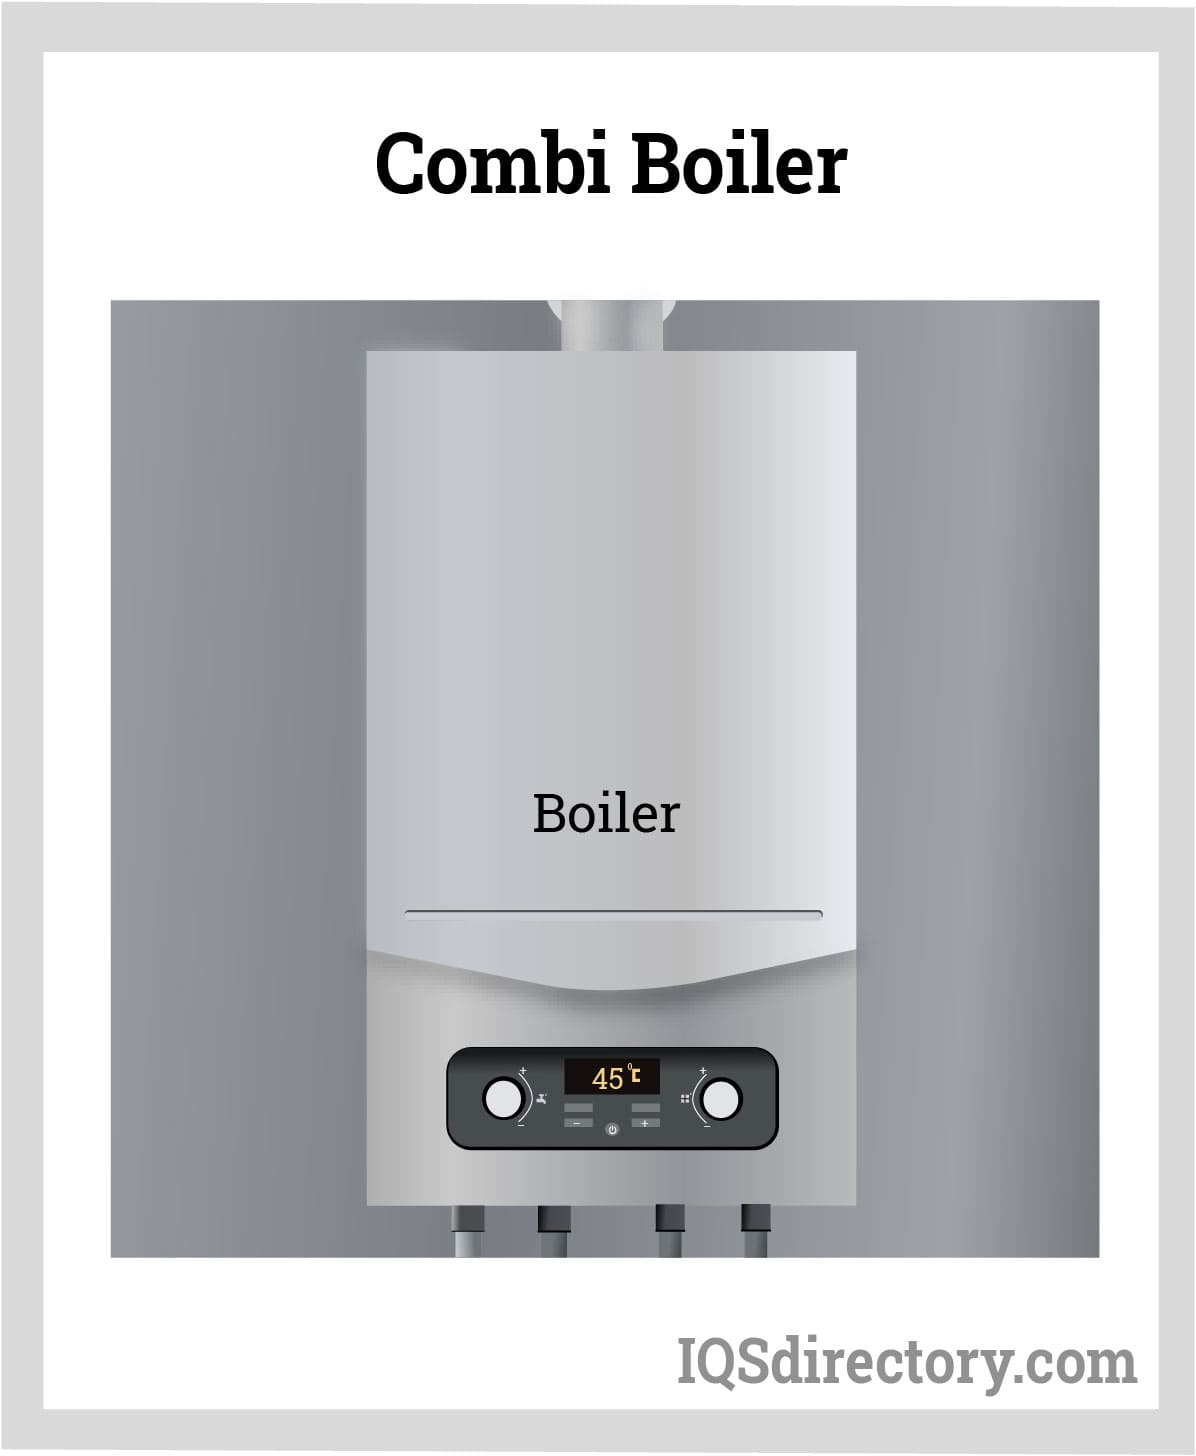 Combi Boiler